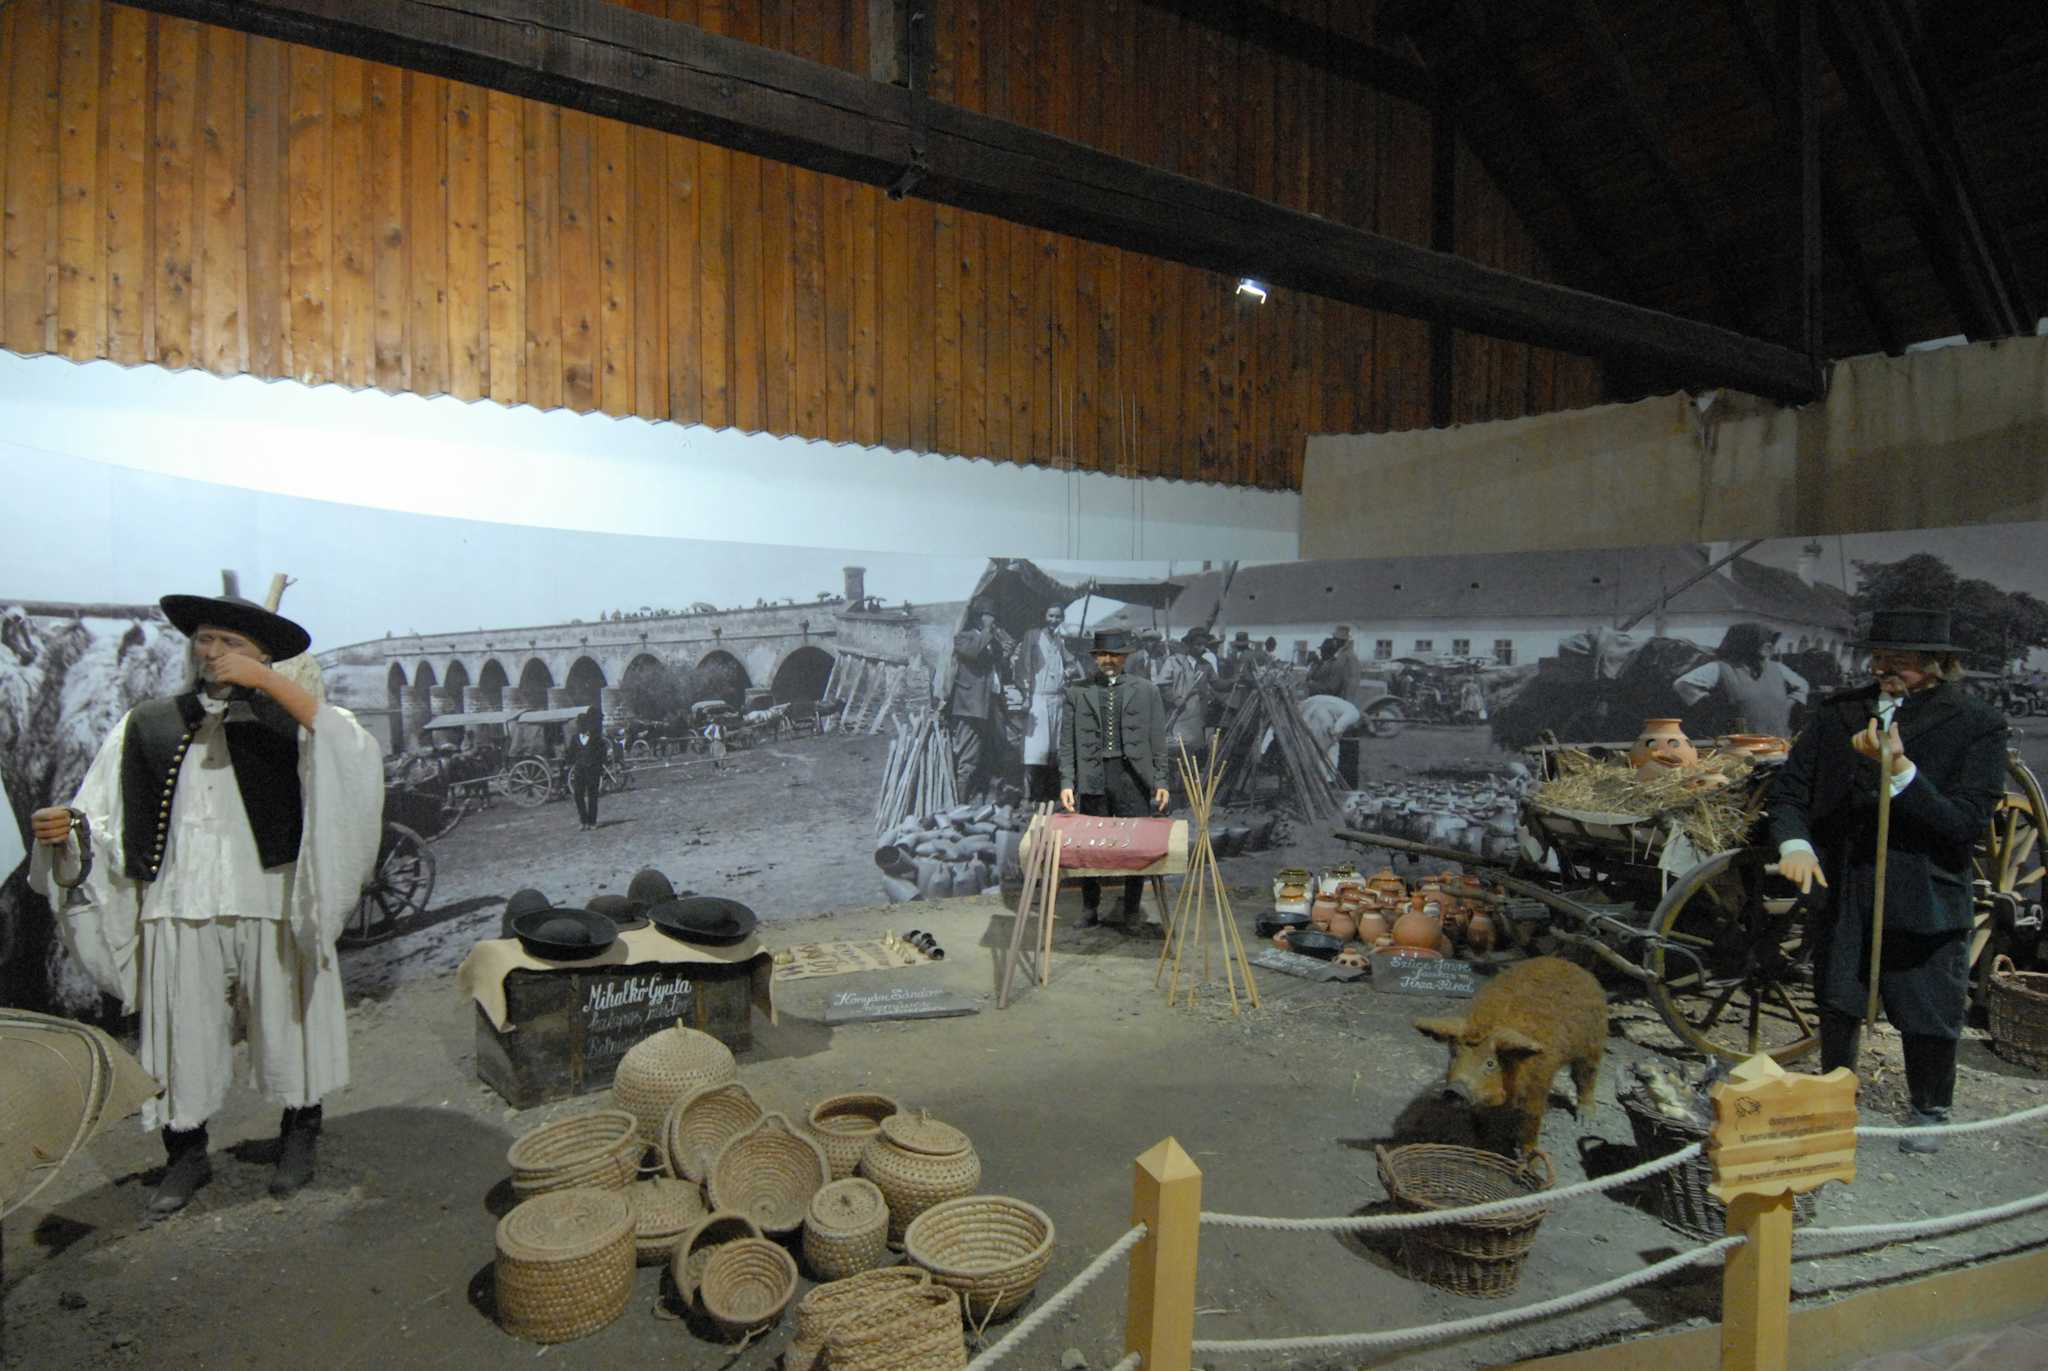 Shepherds Museum in Bugac